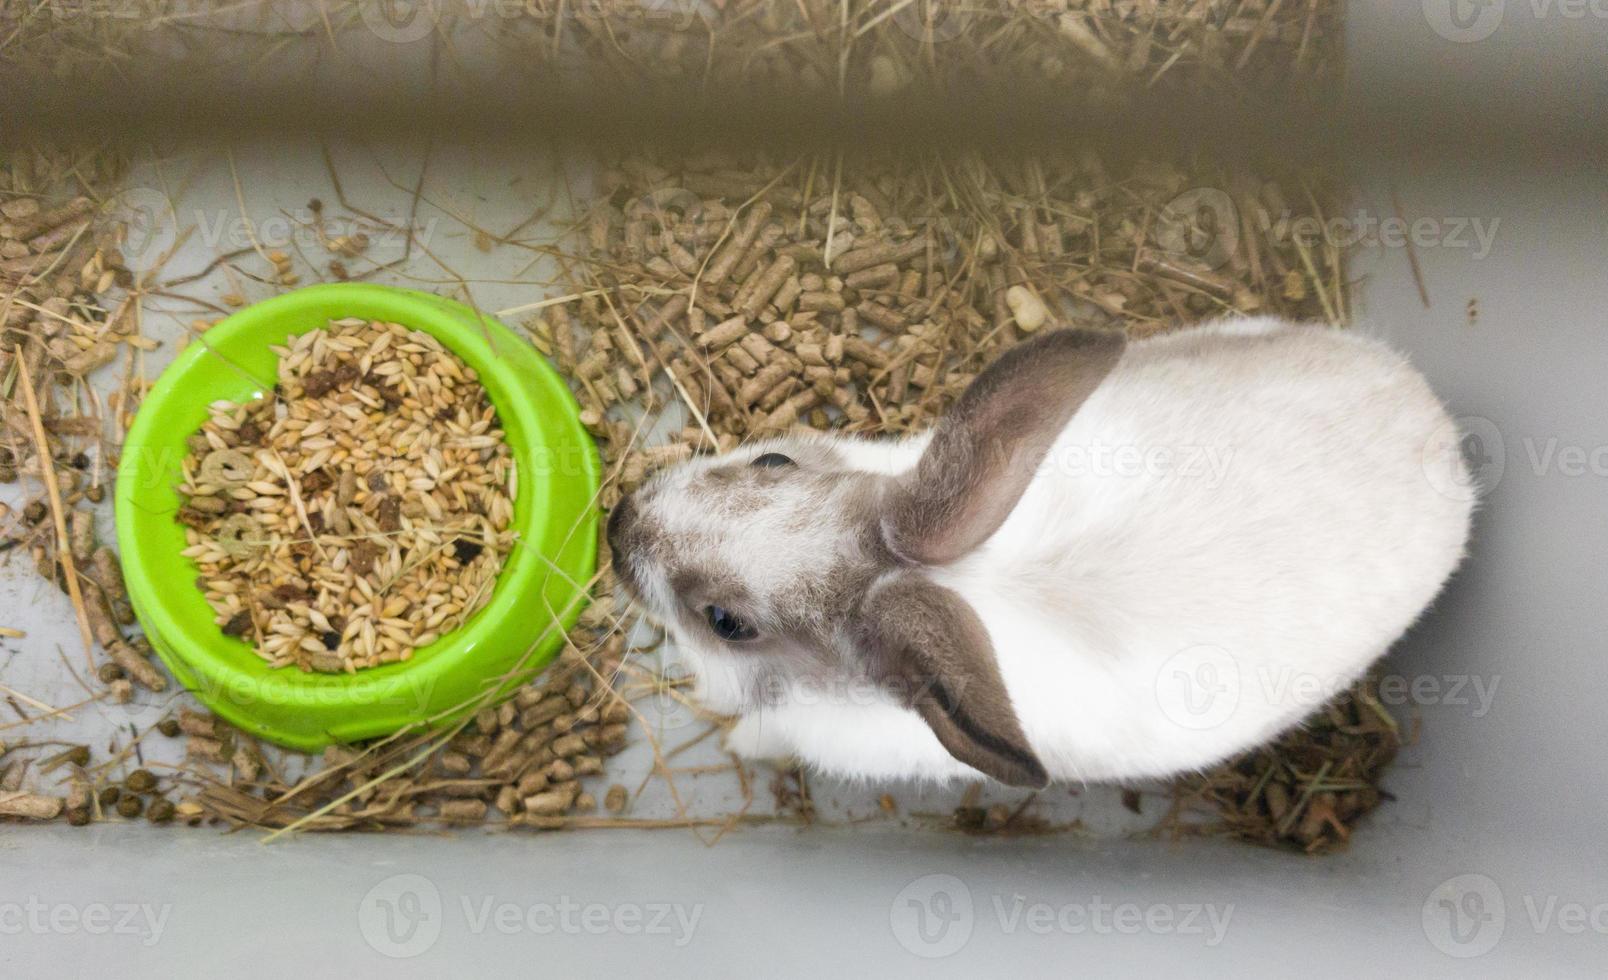 coniglio decorativo domestico in una gabbia grigia di colore grigio-bianco. coniglio mangia da una ciotola verde. una serie di foto di un simpatico e soffice animale domestico roditore. piccolo simbolo delle vacanze di pasqua, coniglietto di pasqua